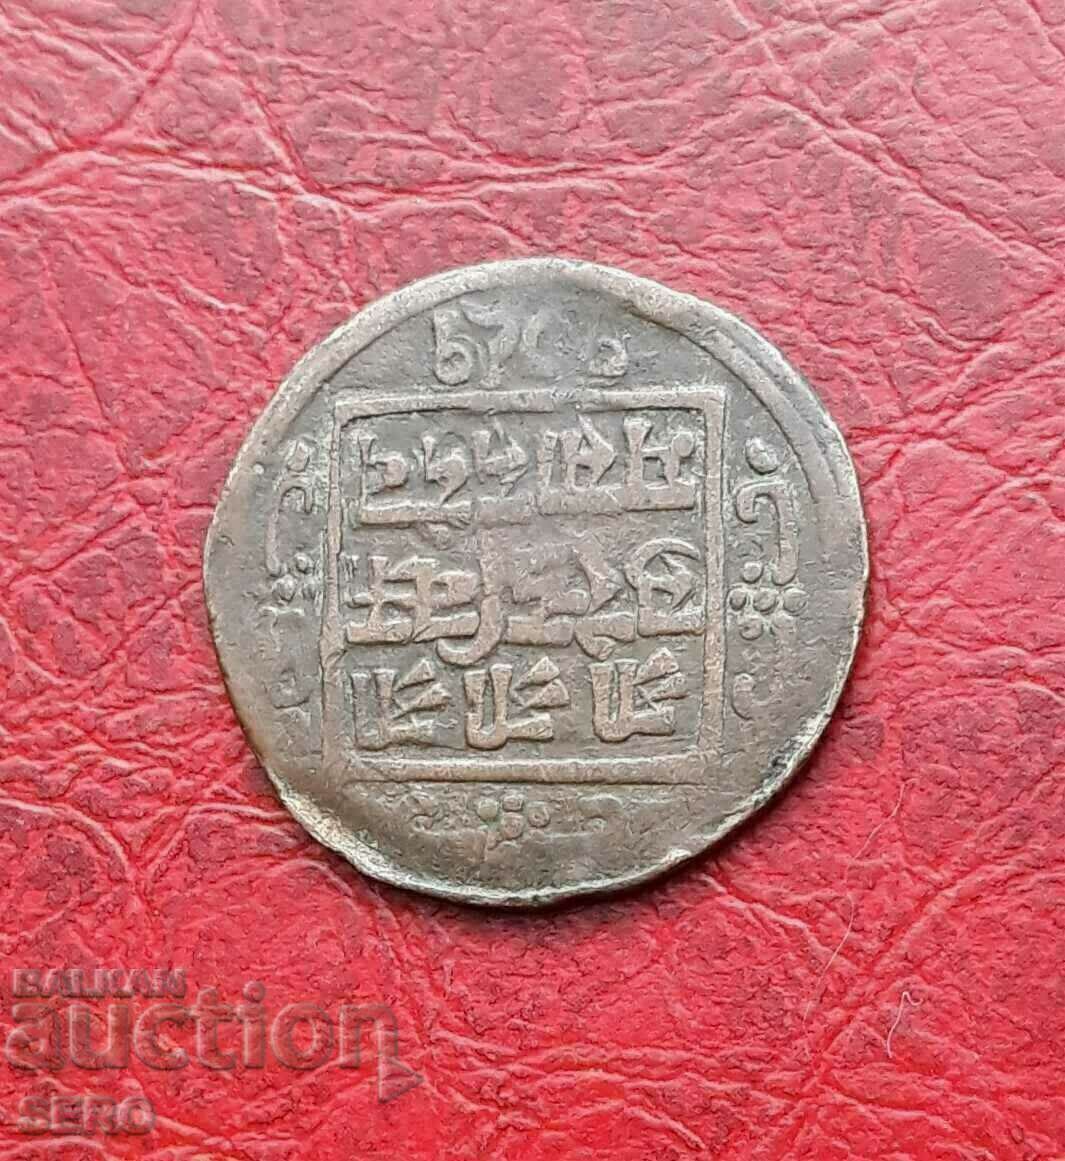 Индия-стара медна монета